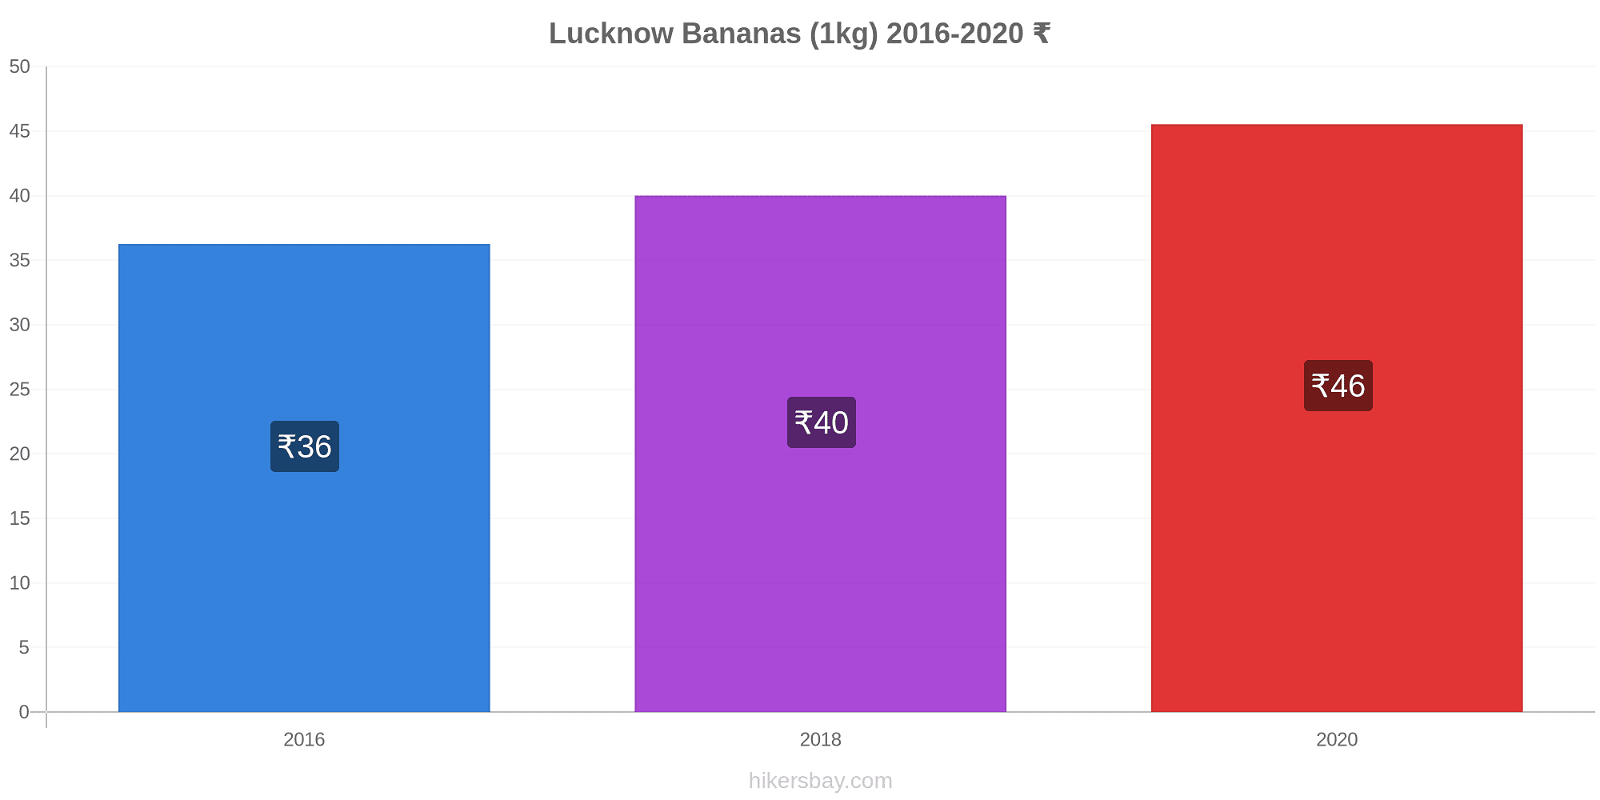 Lucknow variação de preço Banana (1kg) hikersbay.com